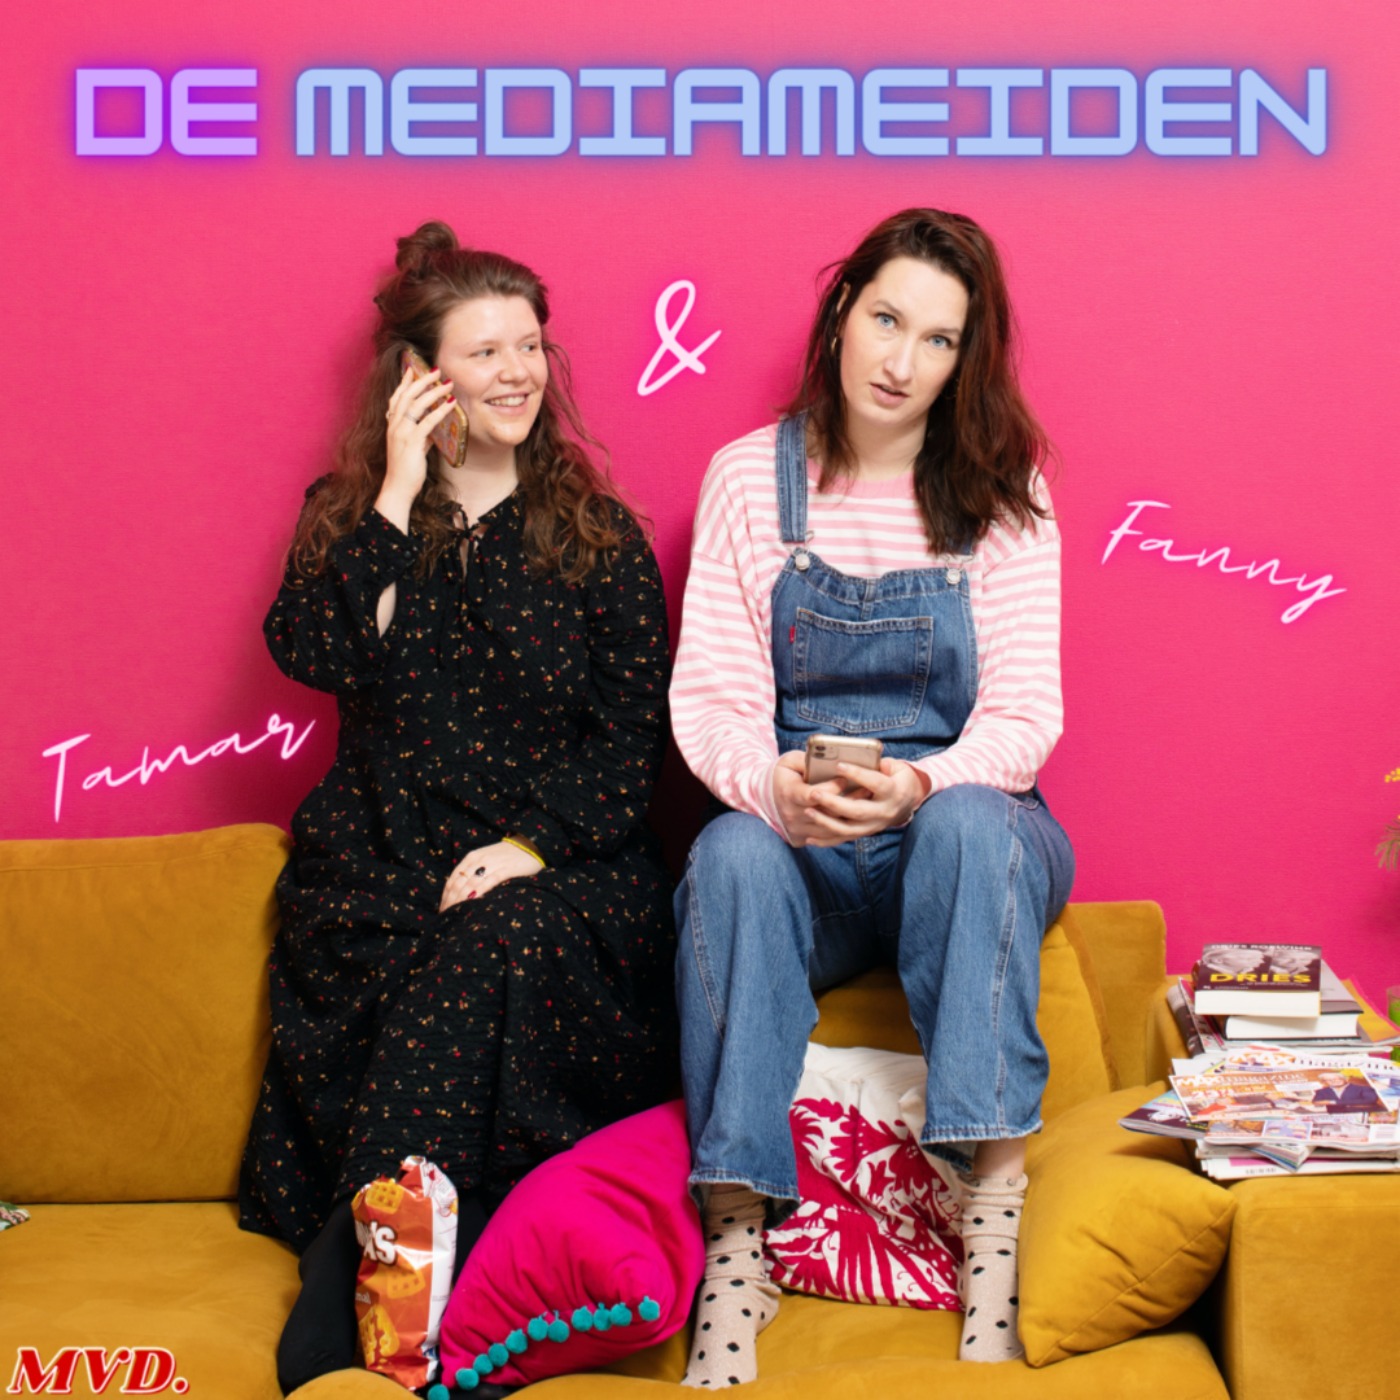 De mediameiden - Hosted by Tamar Bot & Fanny van de Reijt